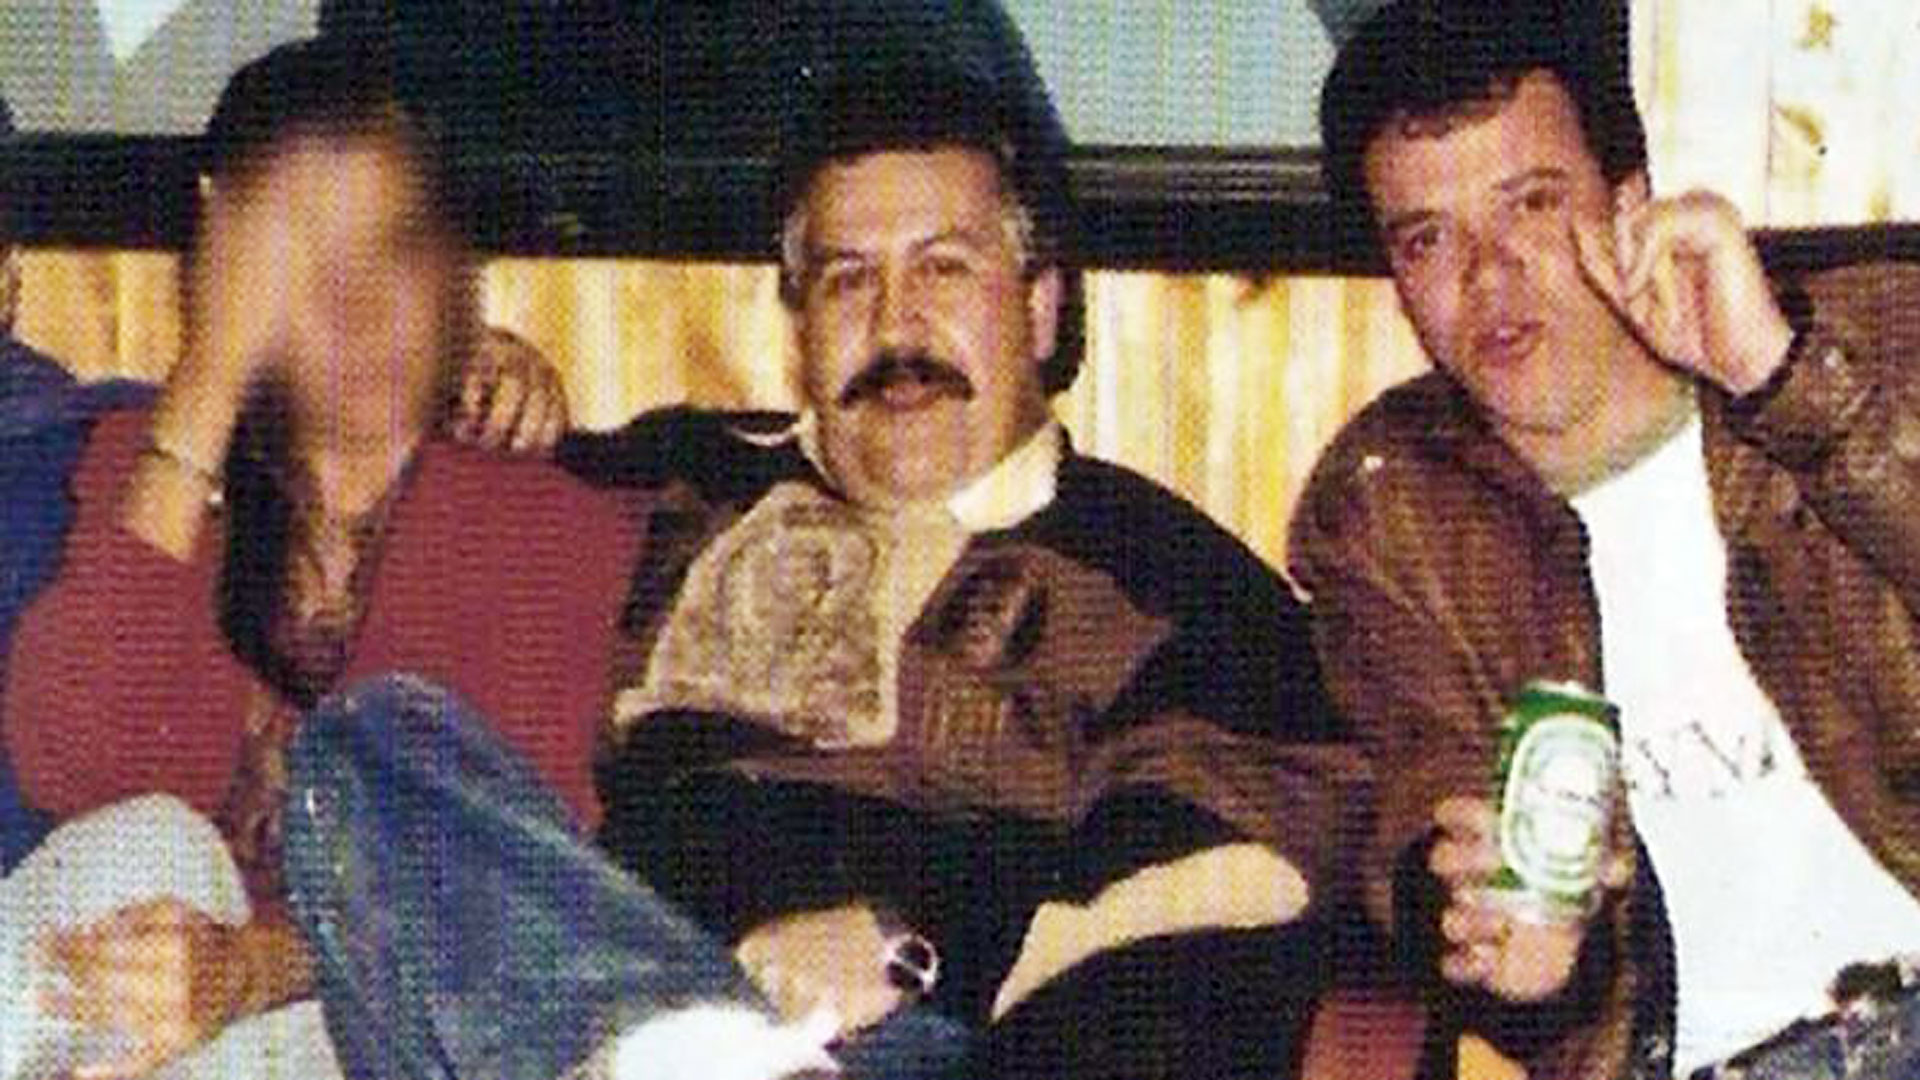 El sicario que reveló perversos secretos de Escobar y la pelea por los USD 12 millones su madre “ganó en la Infobae